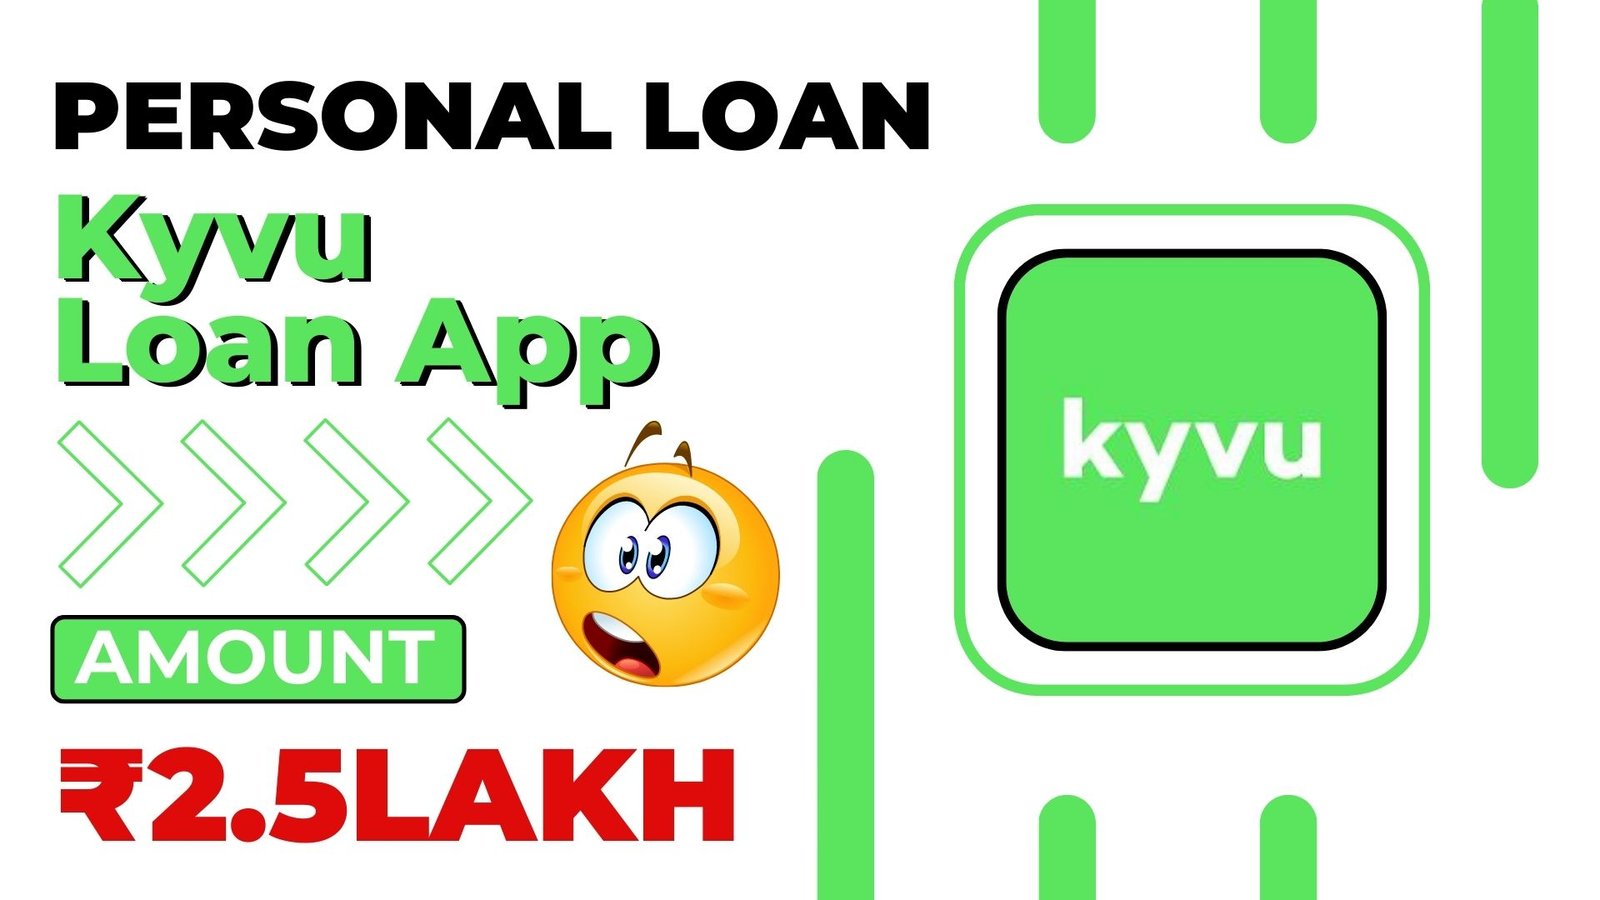 Kyvu Loan App Loan Amount